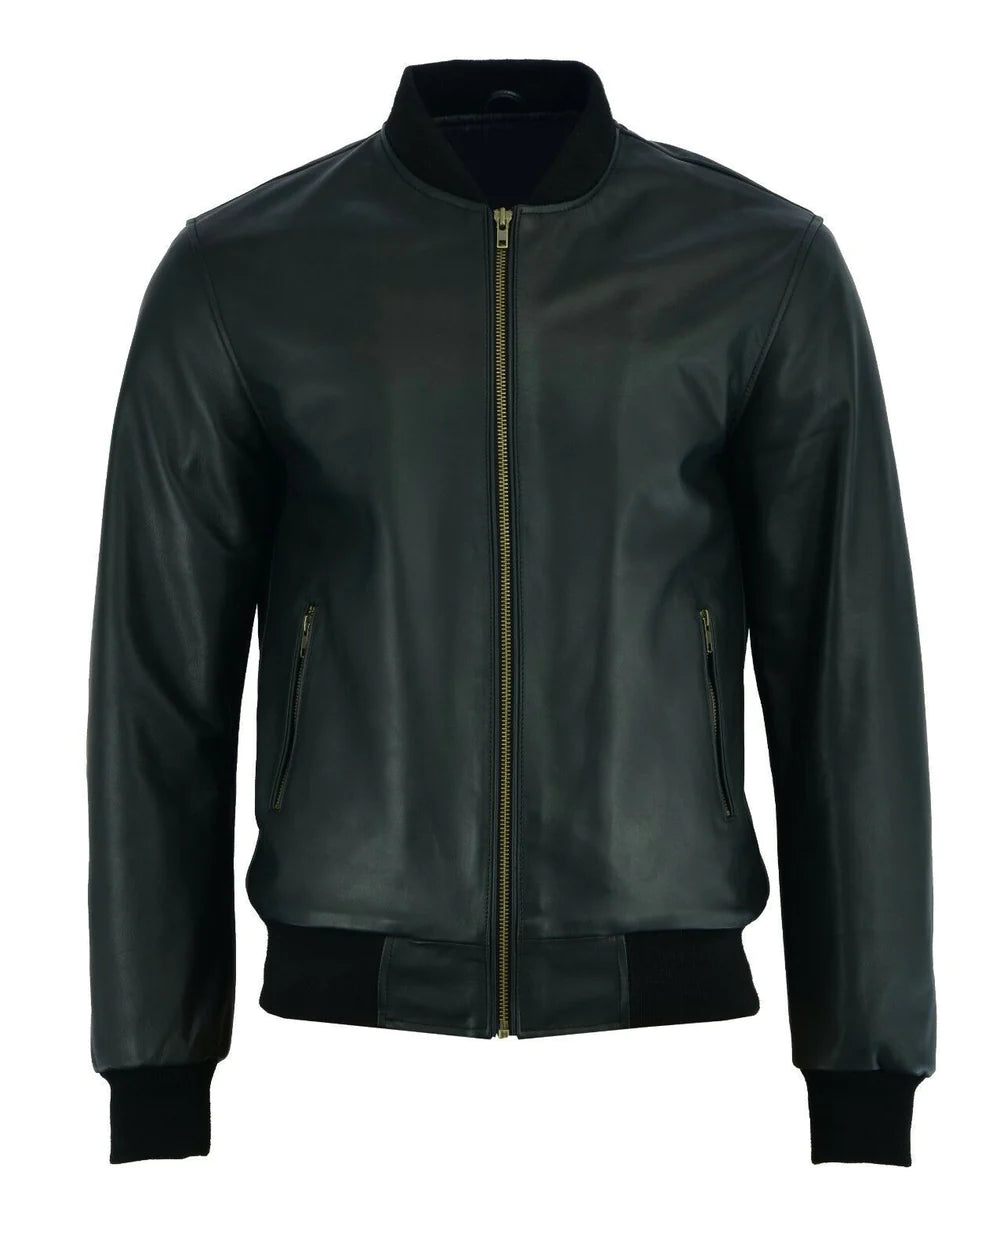 New 70's retro bomber jacket men's black classic soft leather jacket